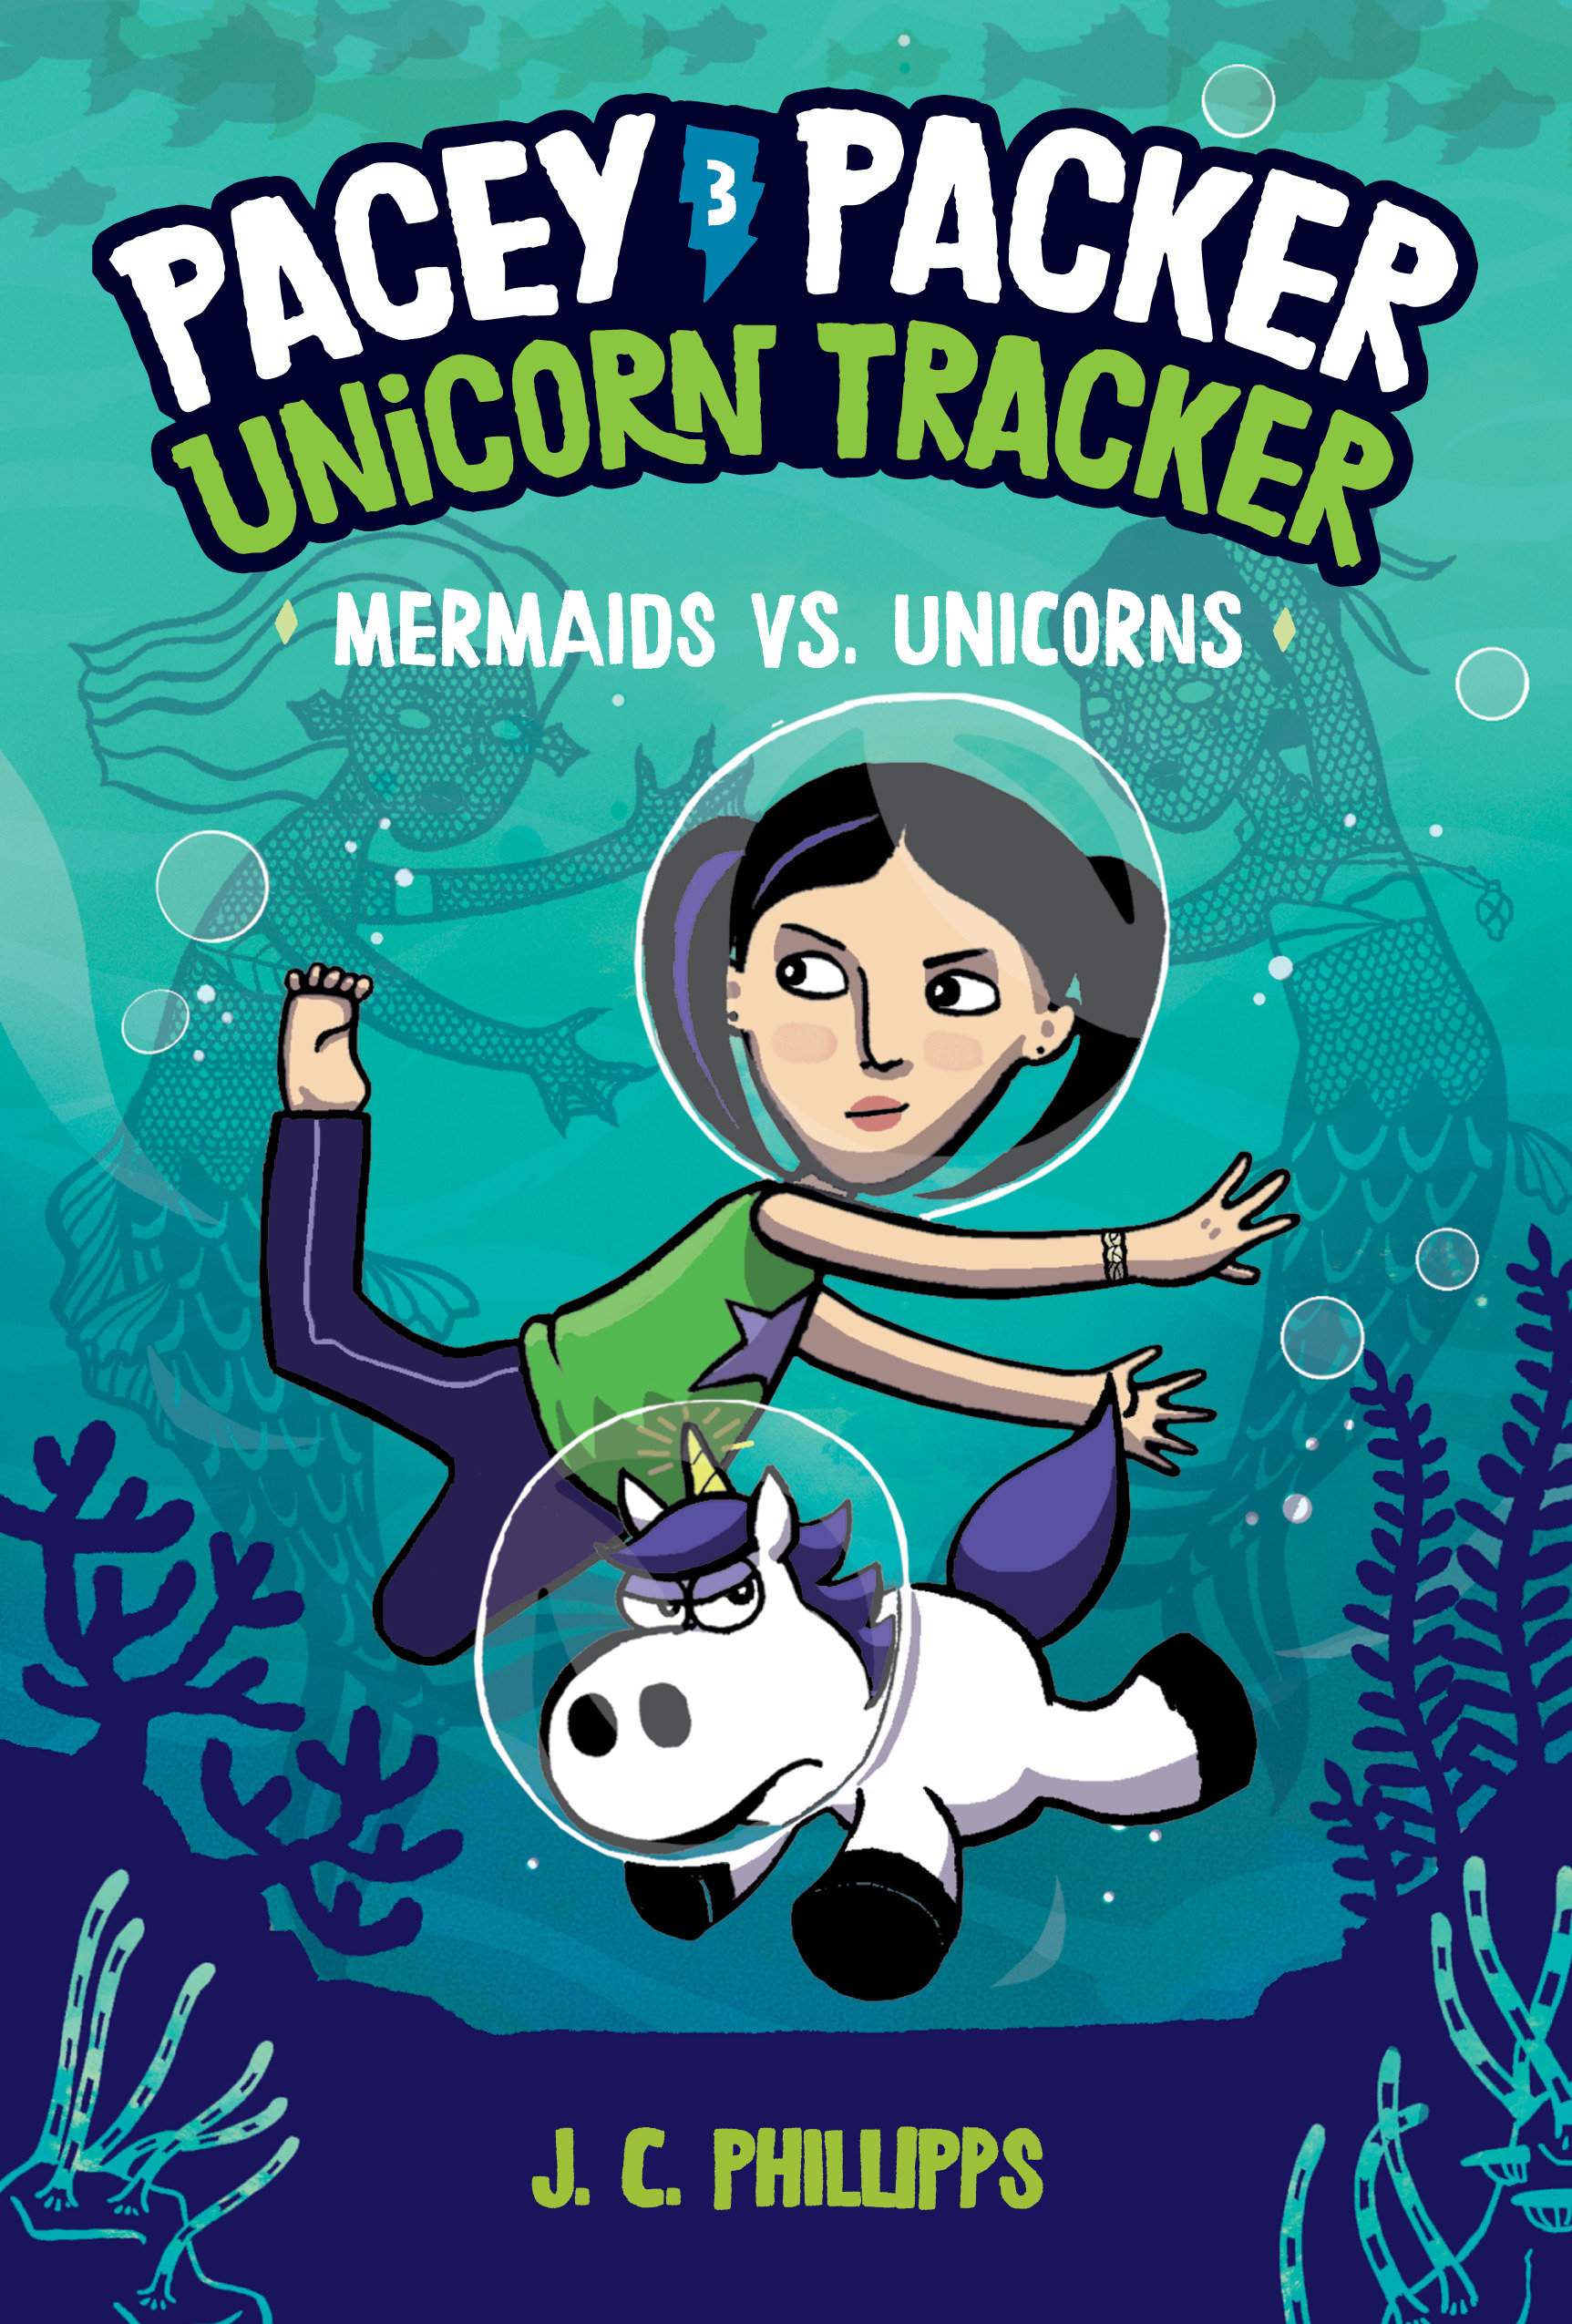 Pacey Packer Unicorn Tracker Hardcover Graphic Novel Volume 3 Mermaids Vs. Unicorns